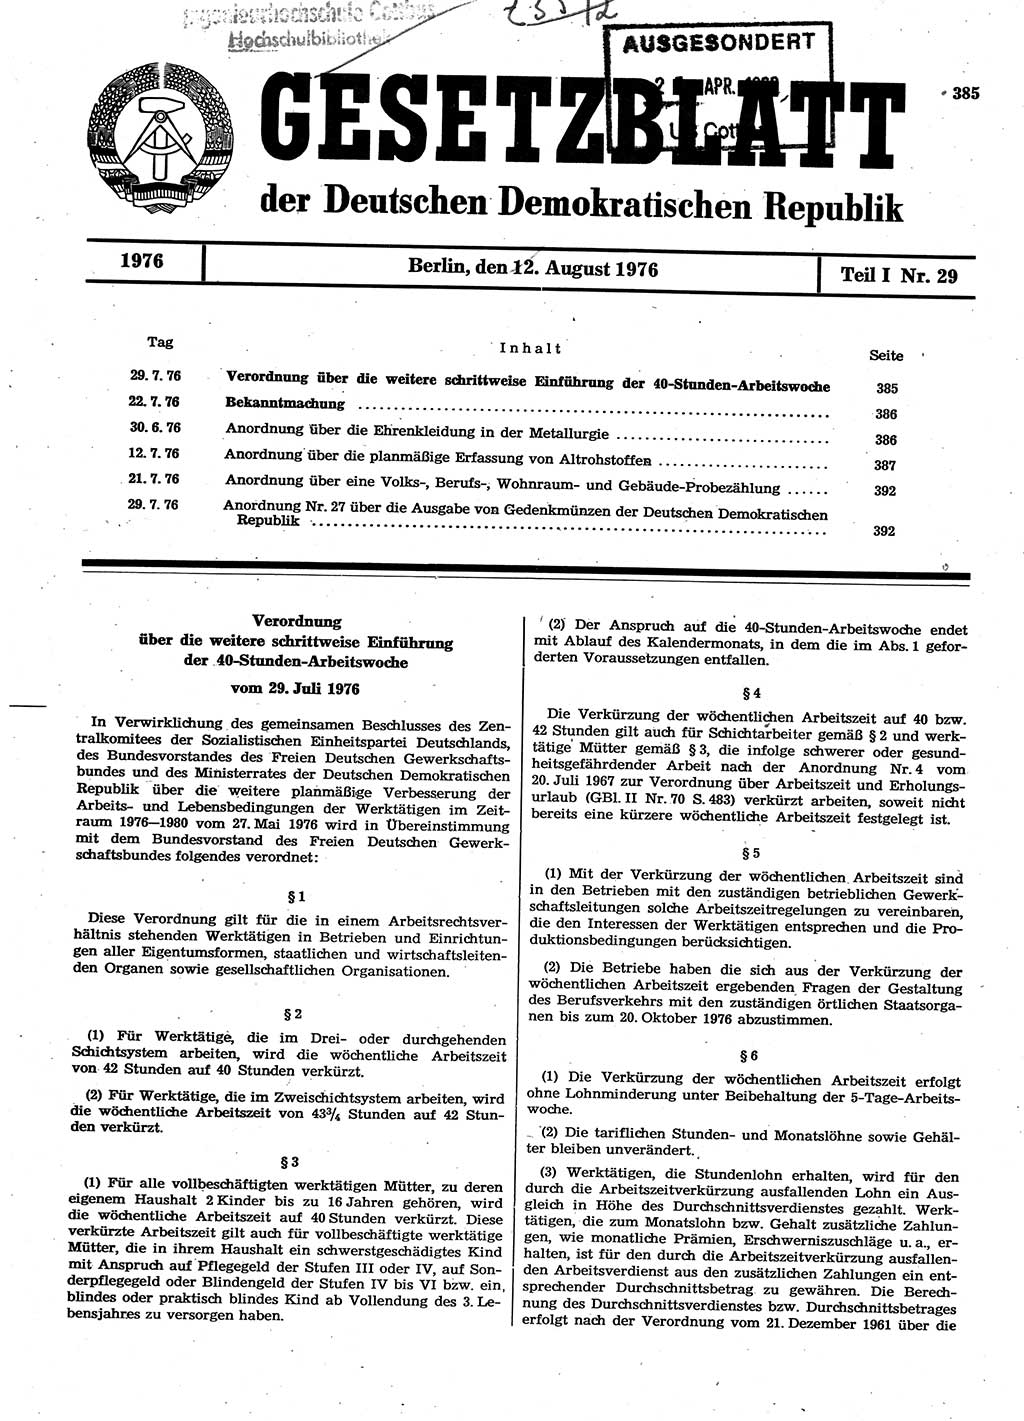 Gesetzblatt (GBl.) der Deutschen Demokratischen Republik (DDR) Teil Ⅰ 1976, Seite 385 (GBl. DDR Ⅰ 1976, S. 385)